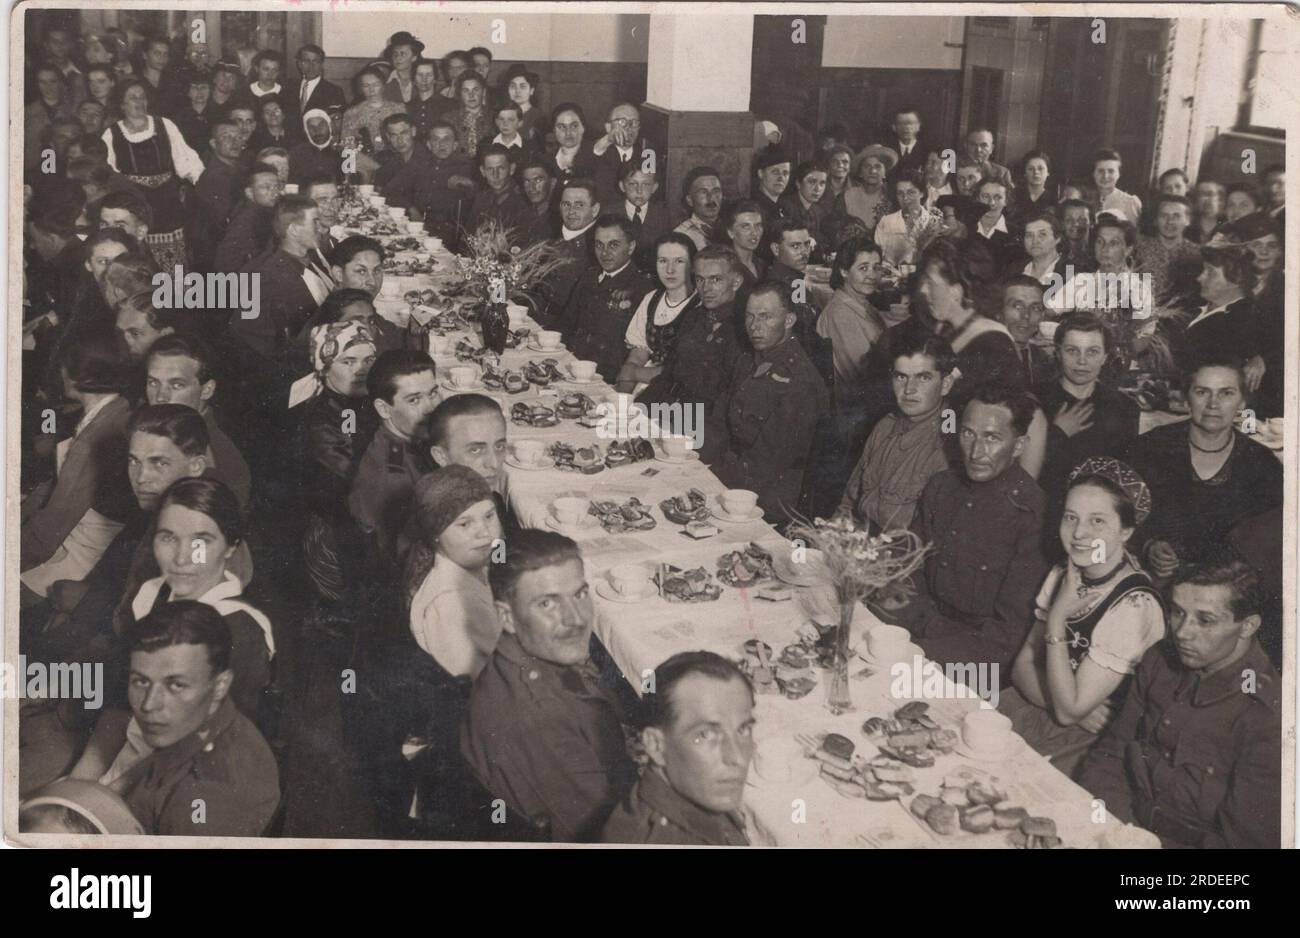 Klassisches Militärevent in einem Bankettsaal während des Zweiten weltkriegs / WW2. Soldaten mit diesen Frauen, die an dieser Veranstaltung teilnehmen, um zusammen zu essen. Stockfoto